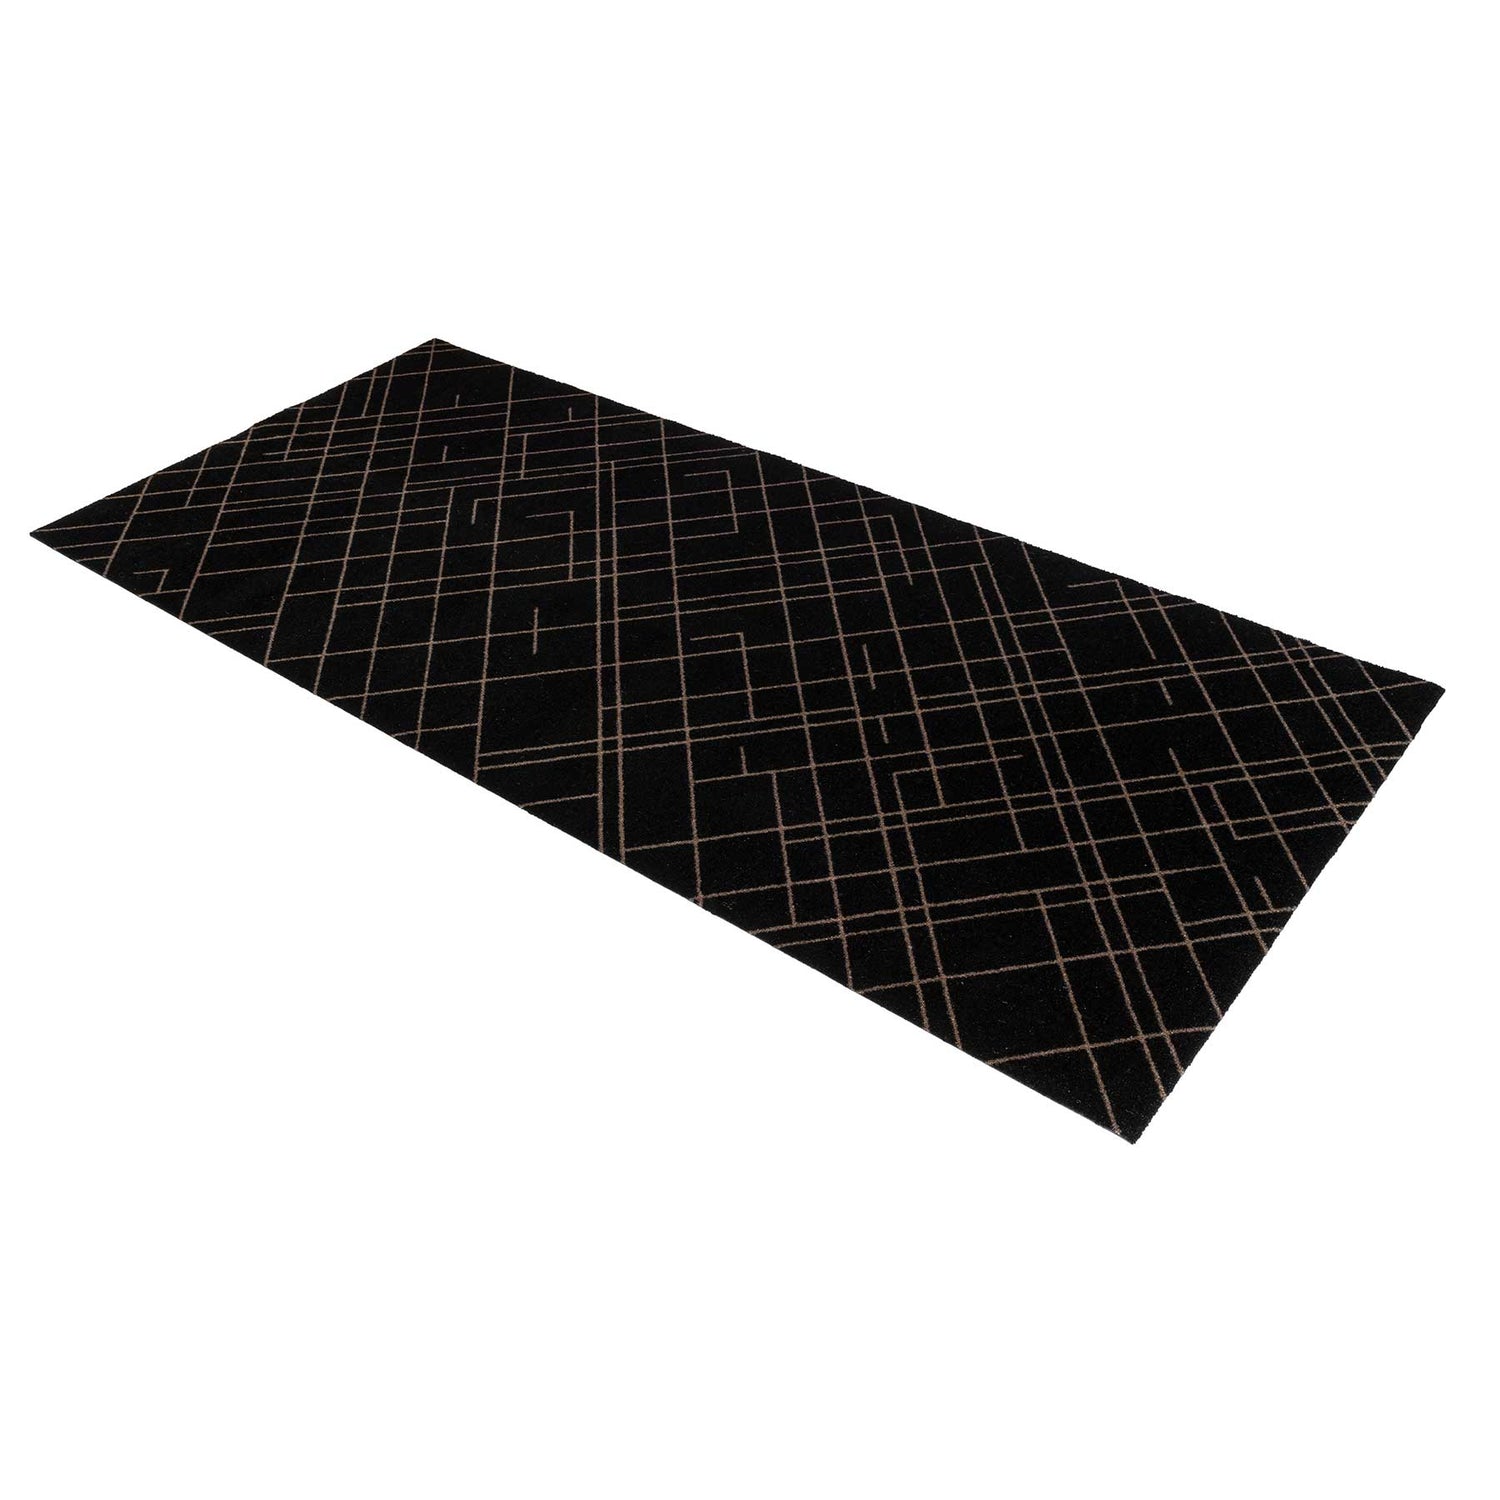 Bodenmatte 90 x 200 cm - Linien/Sandschwarz